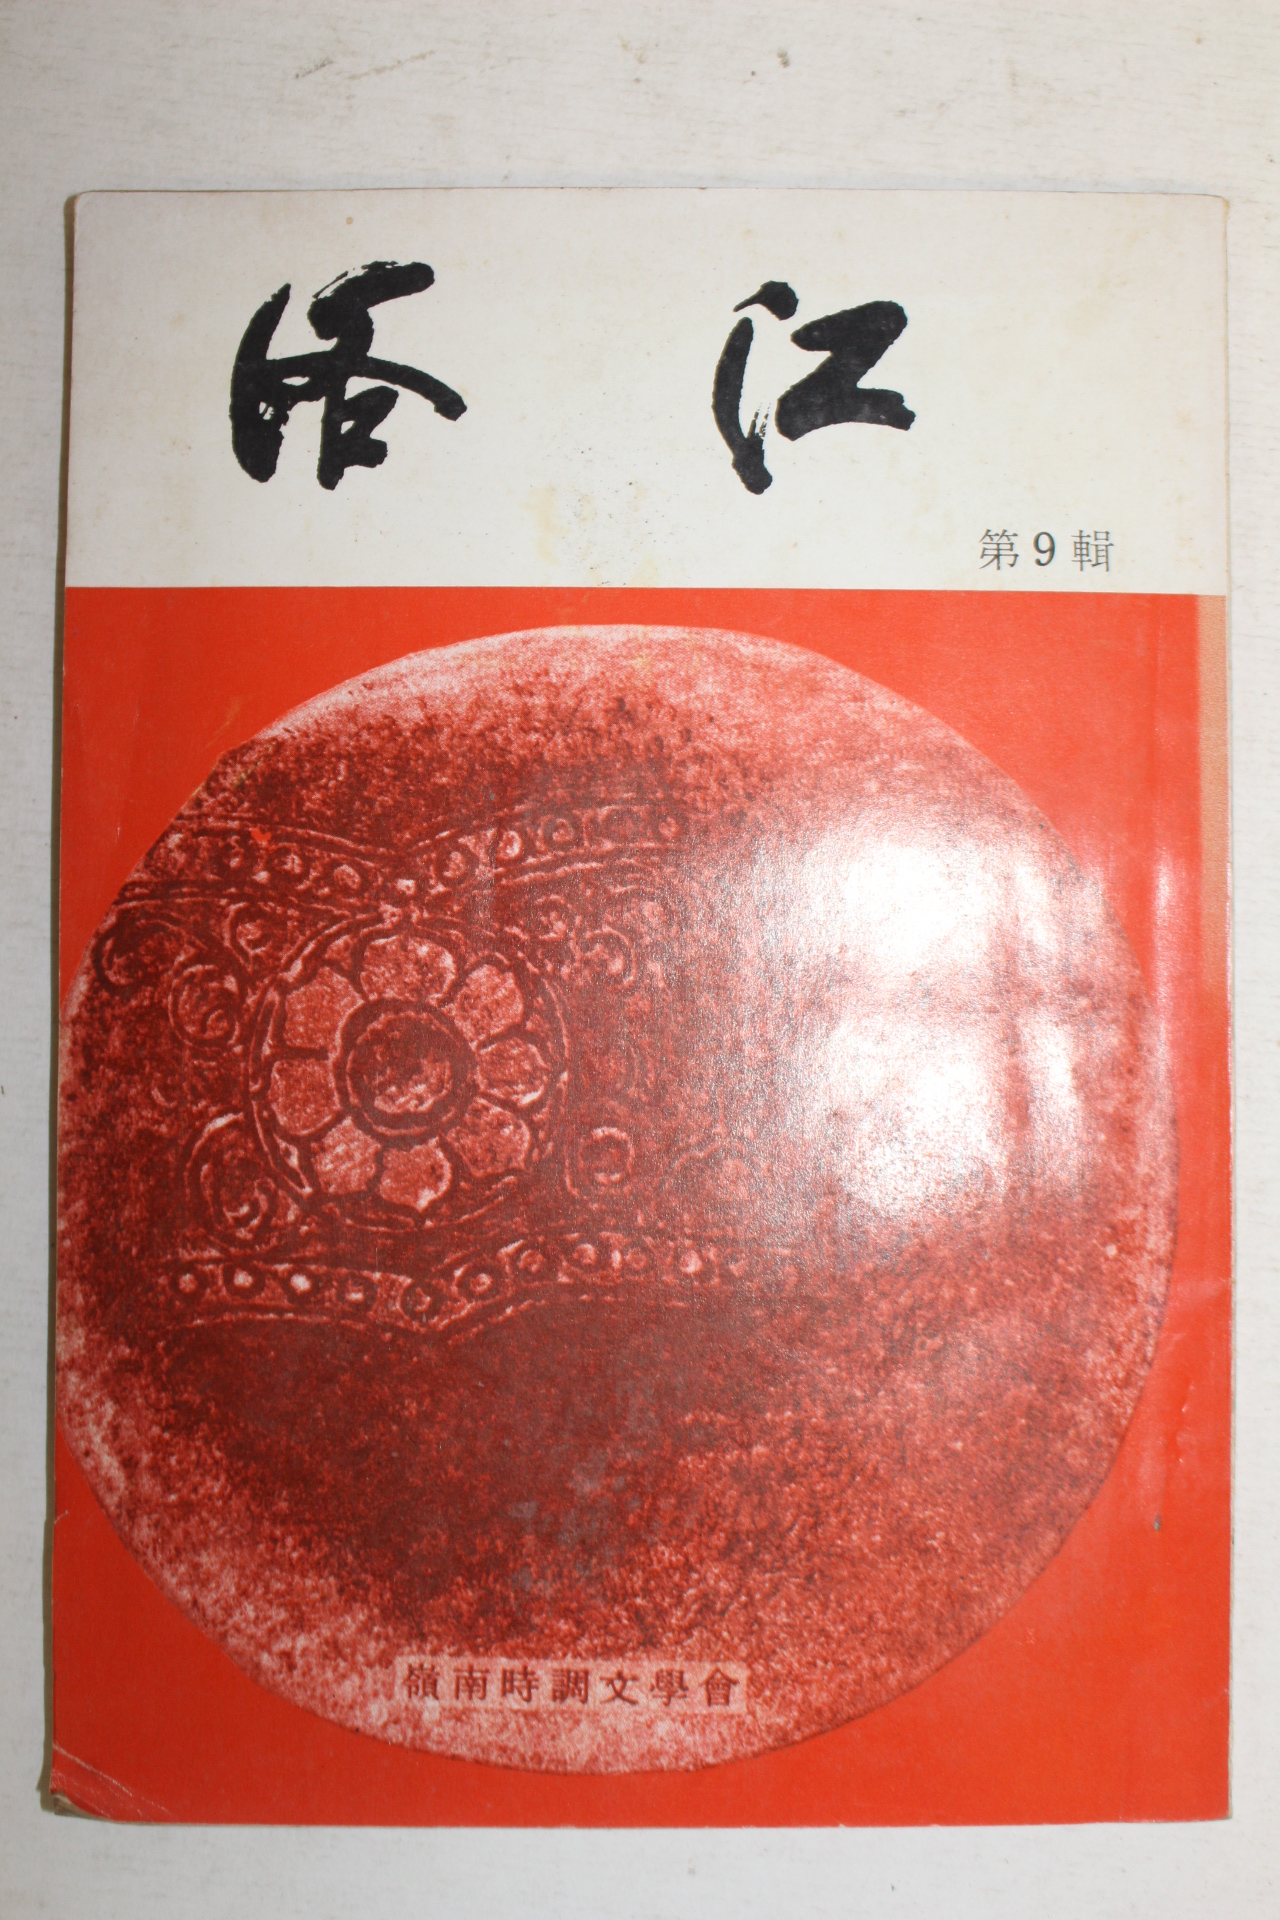 1976년 영남시조문학회 낙강(洛江) 제9집